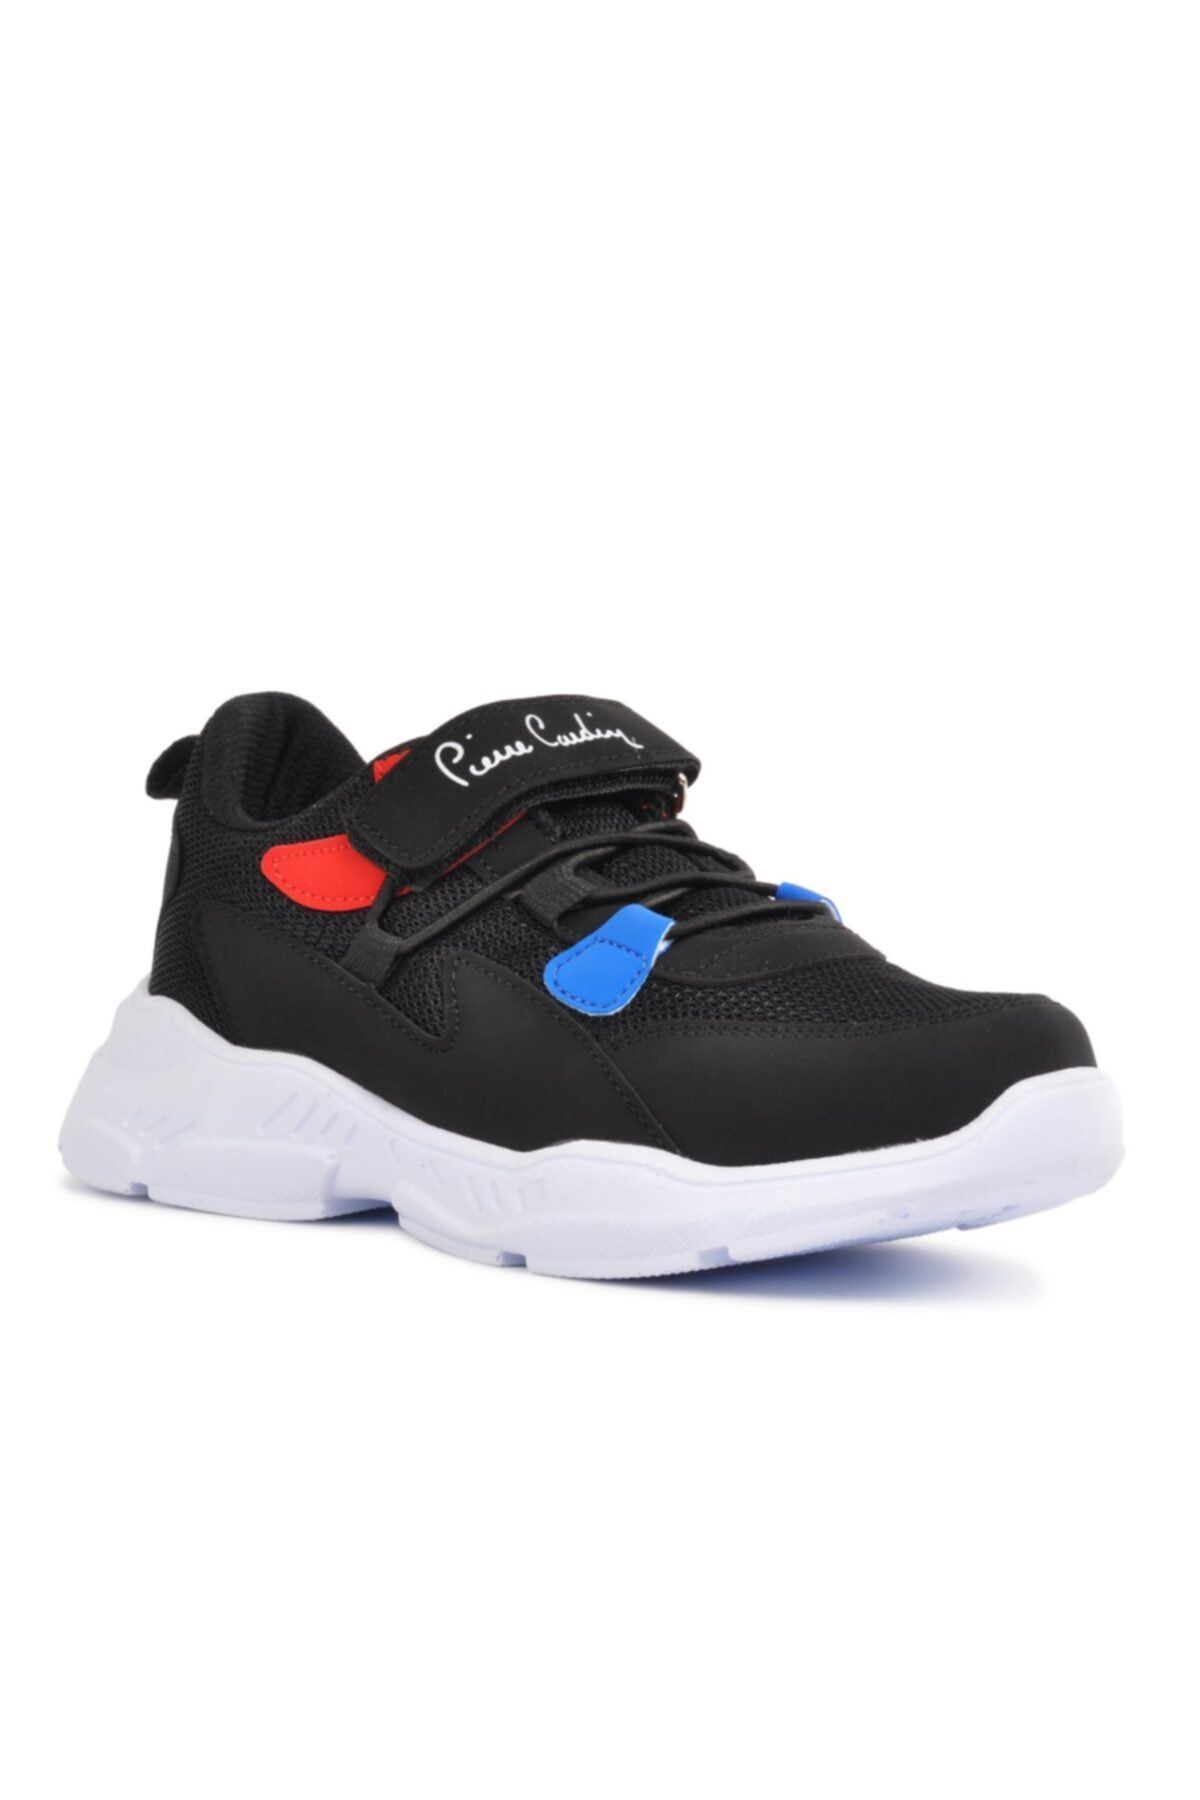 Pierre Cardin Siyah Kırmızı Bantlı Fileli Çocuk Spor Ayakkabı